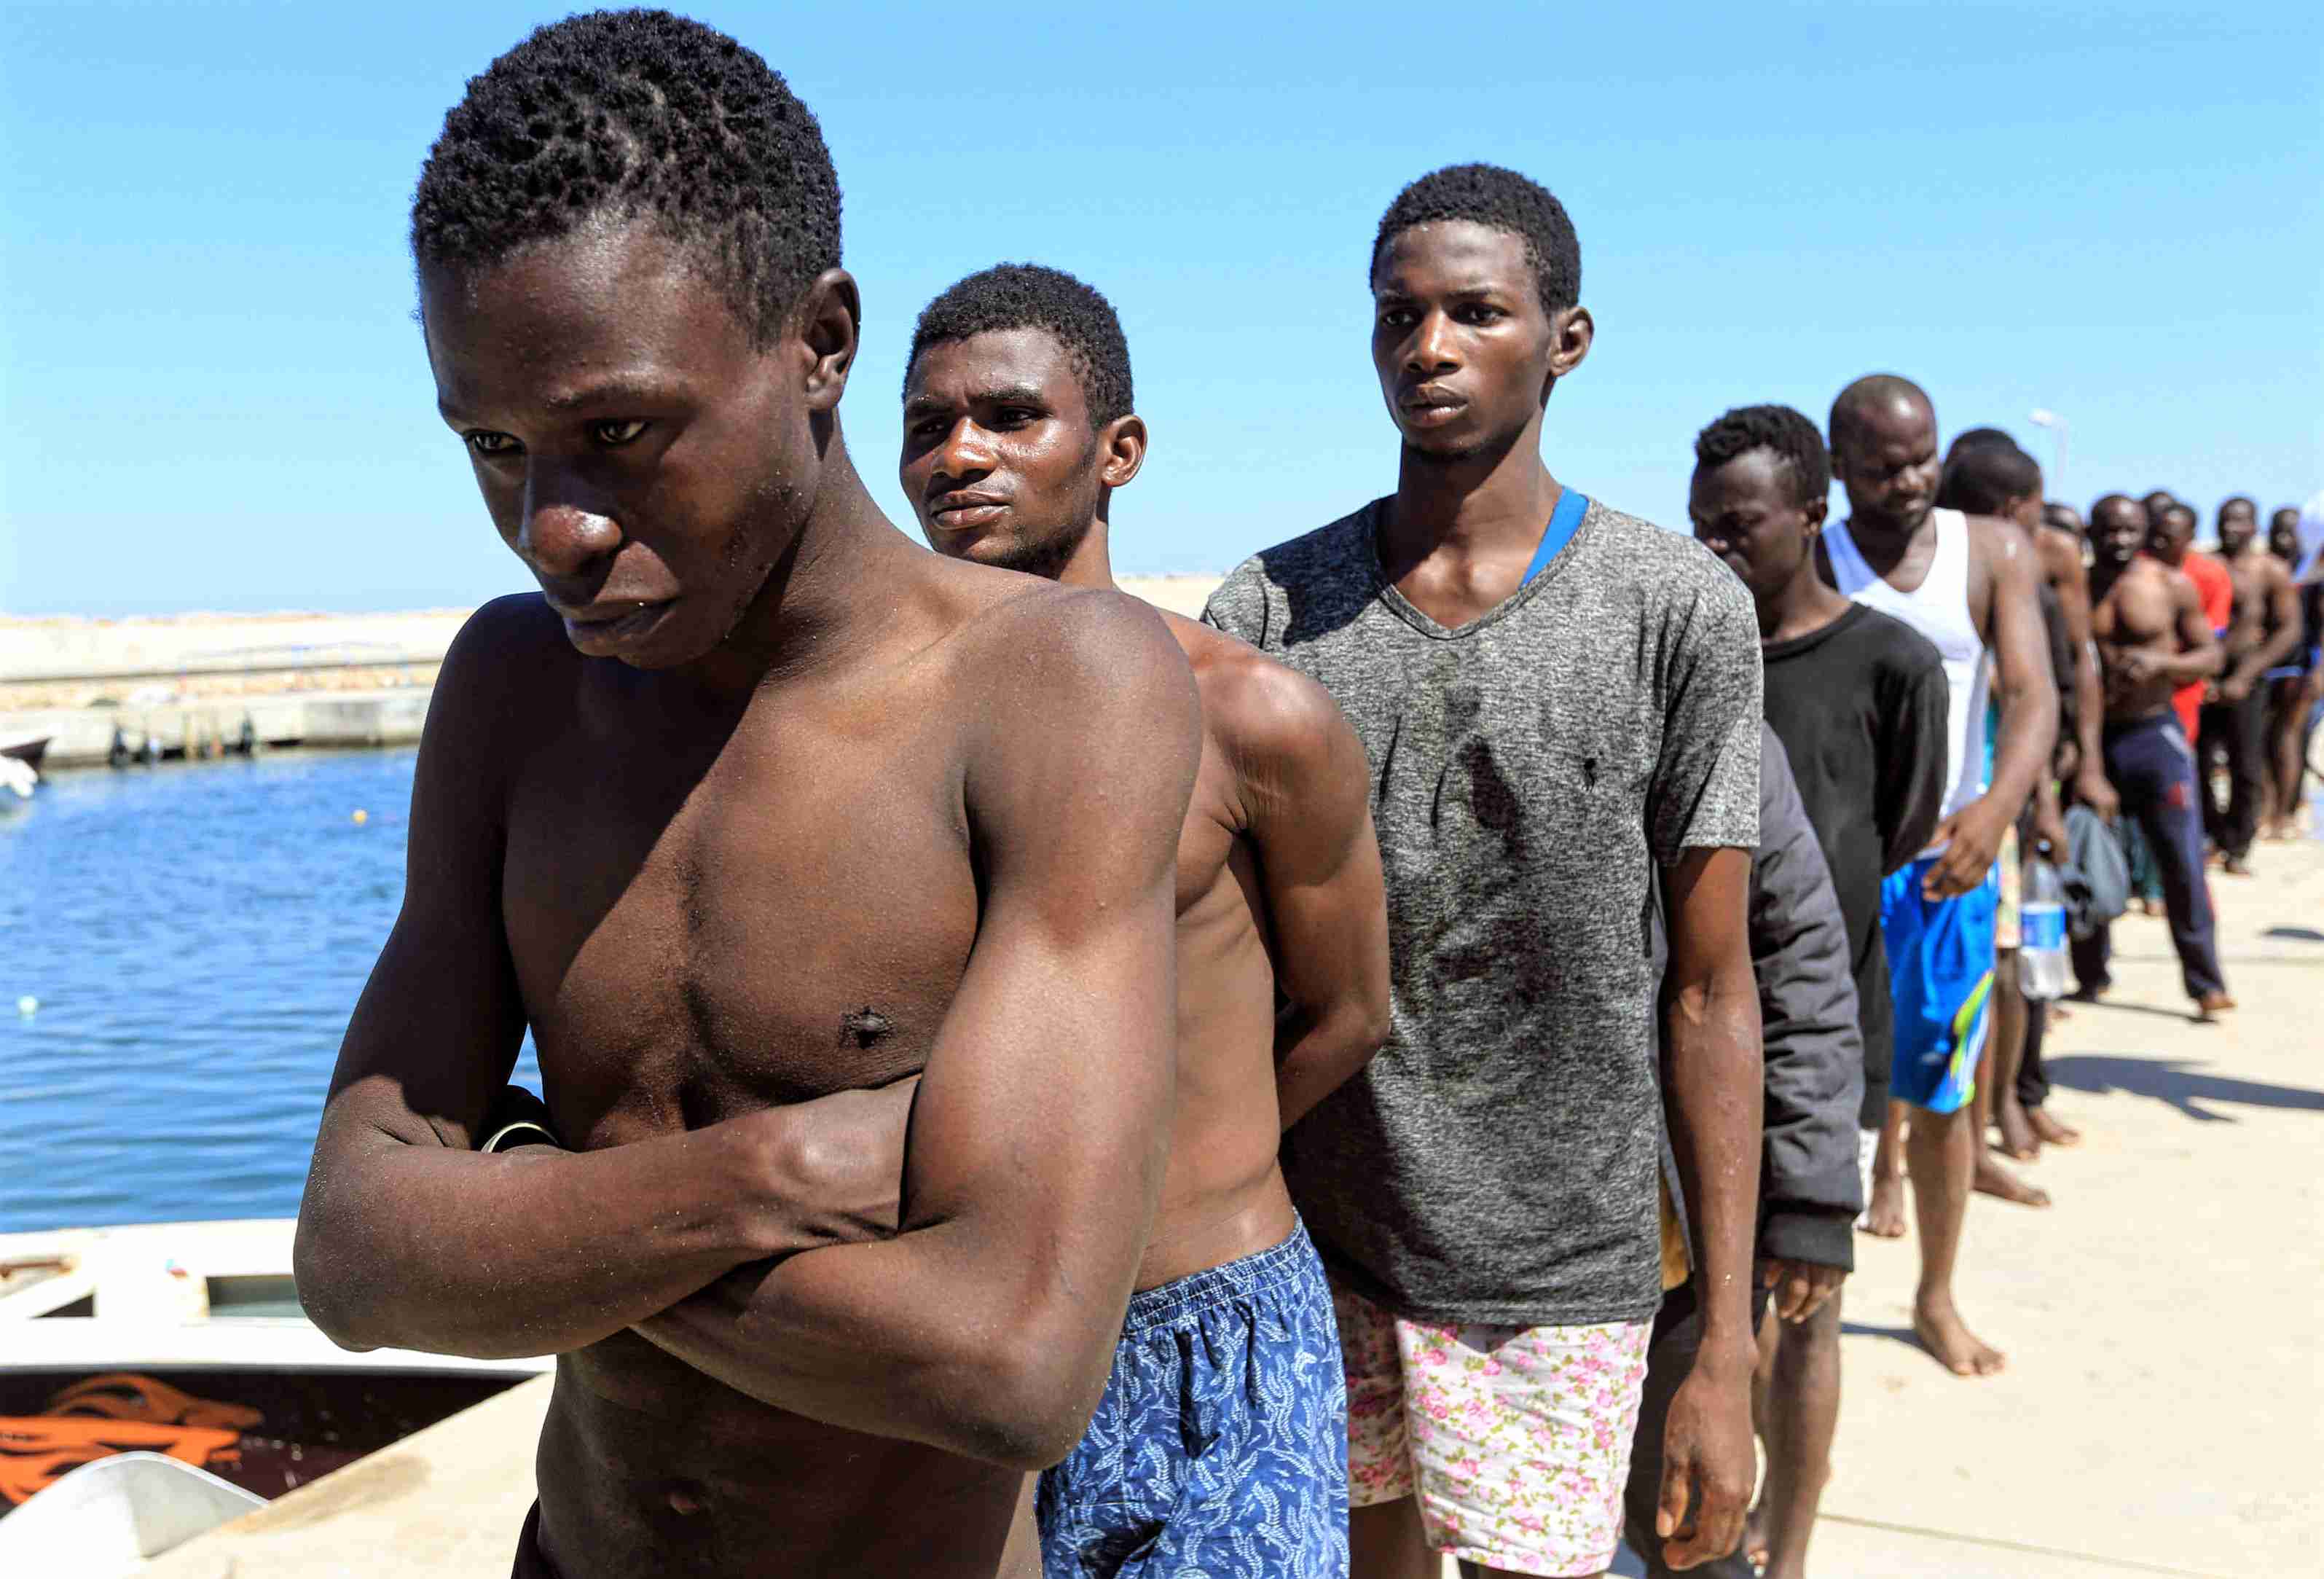 Муж заказал негра. Африканцы на пляже.